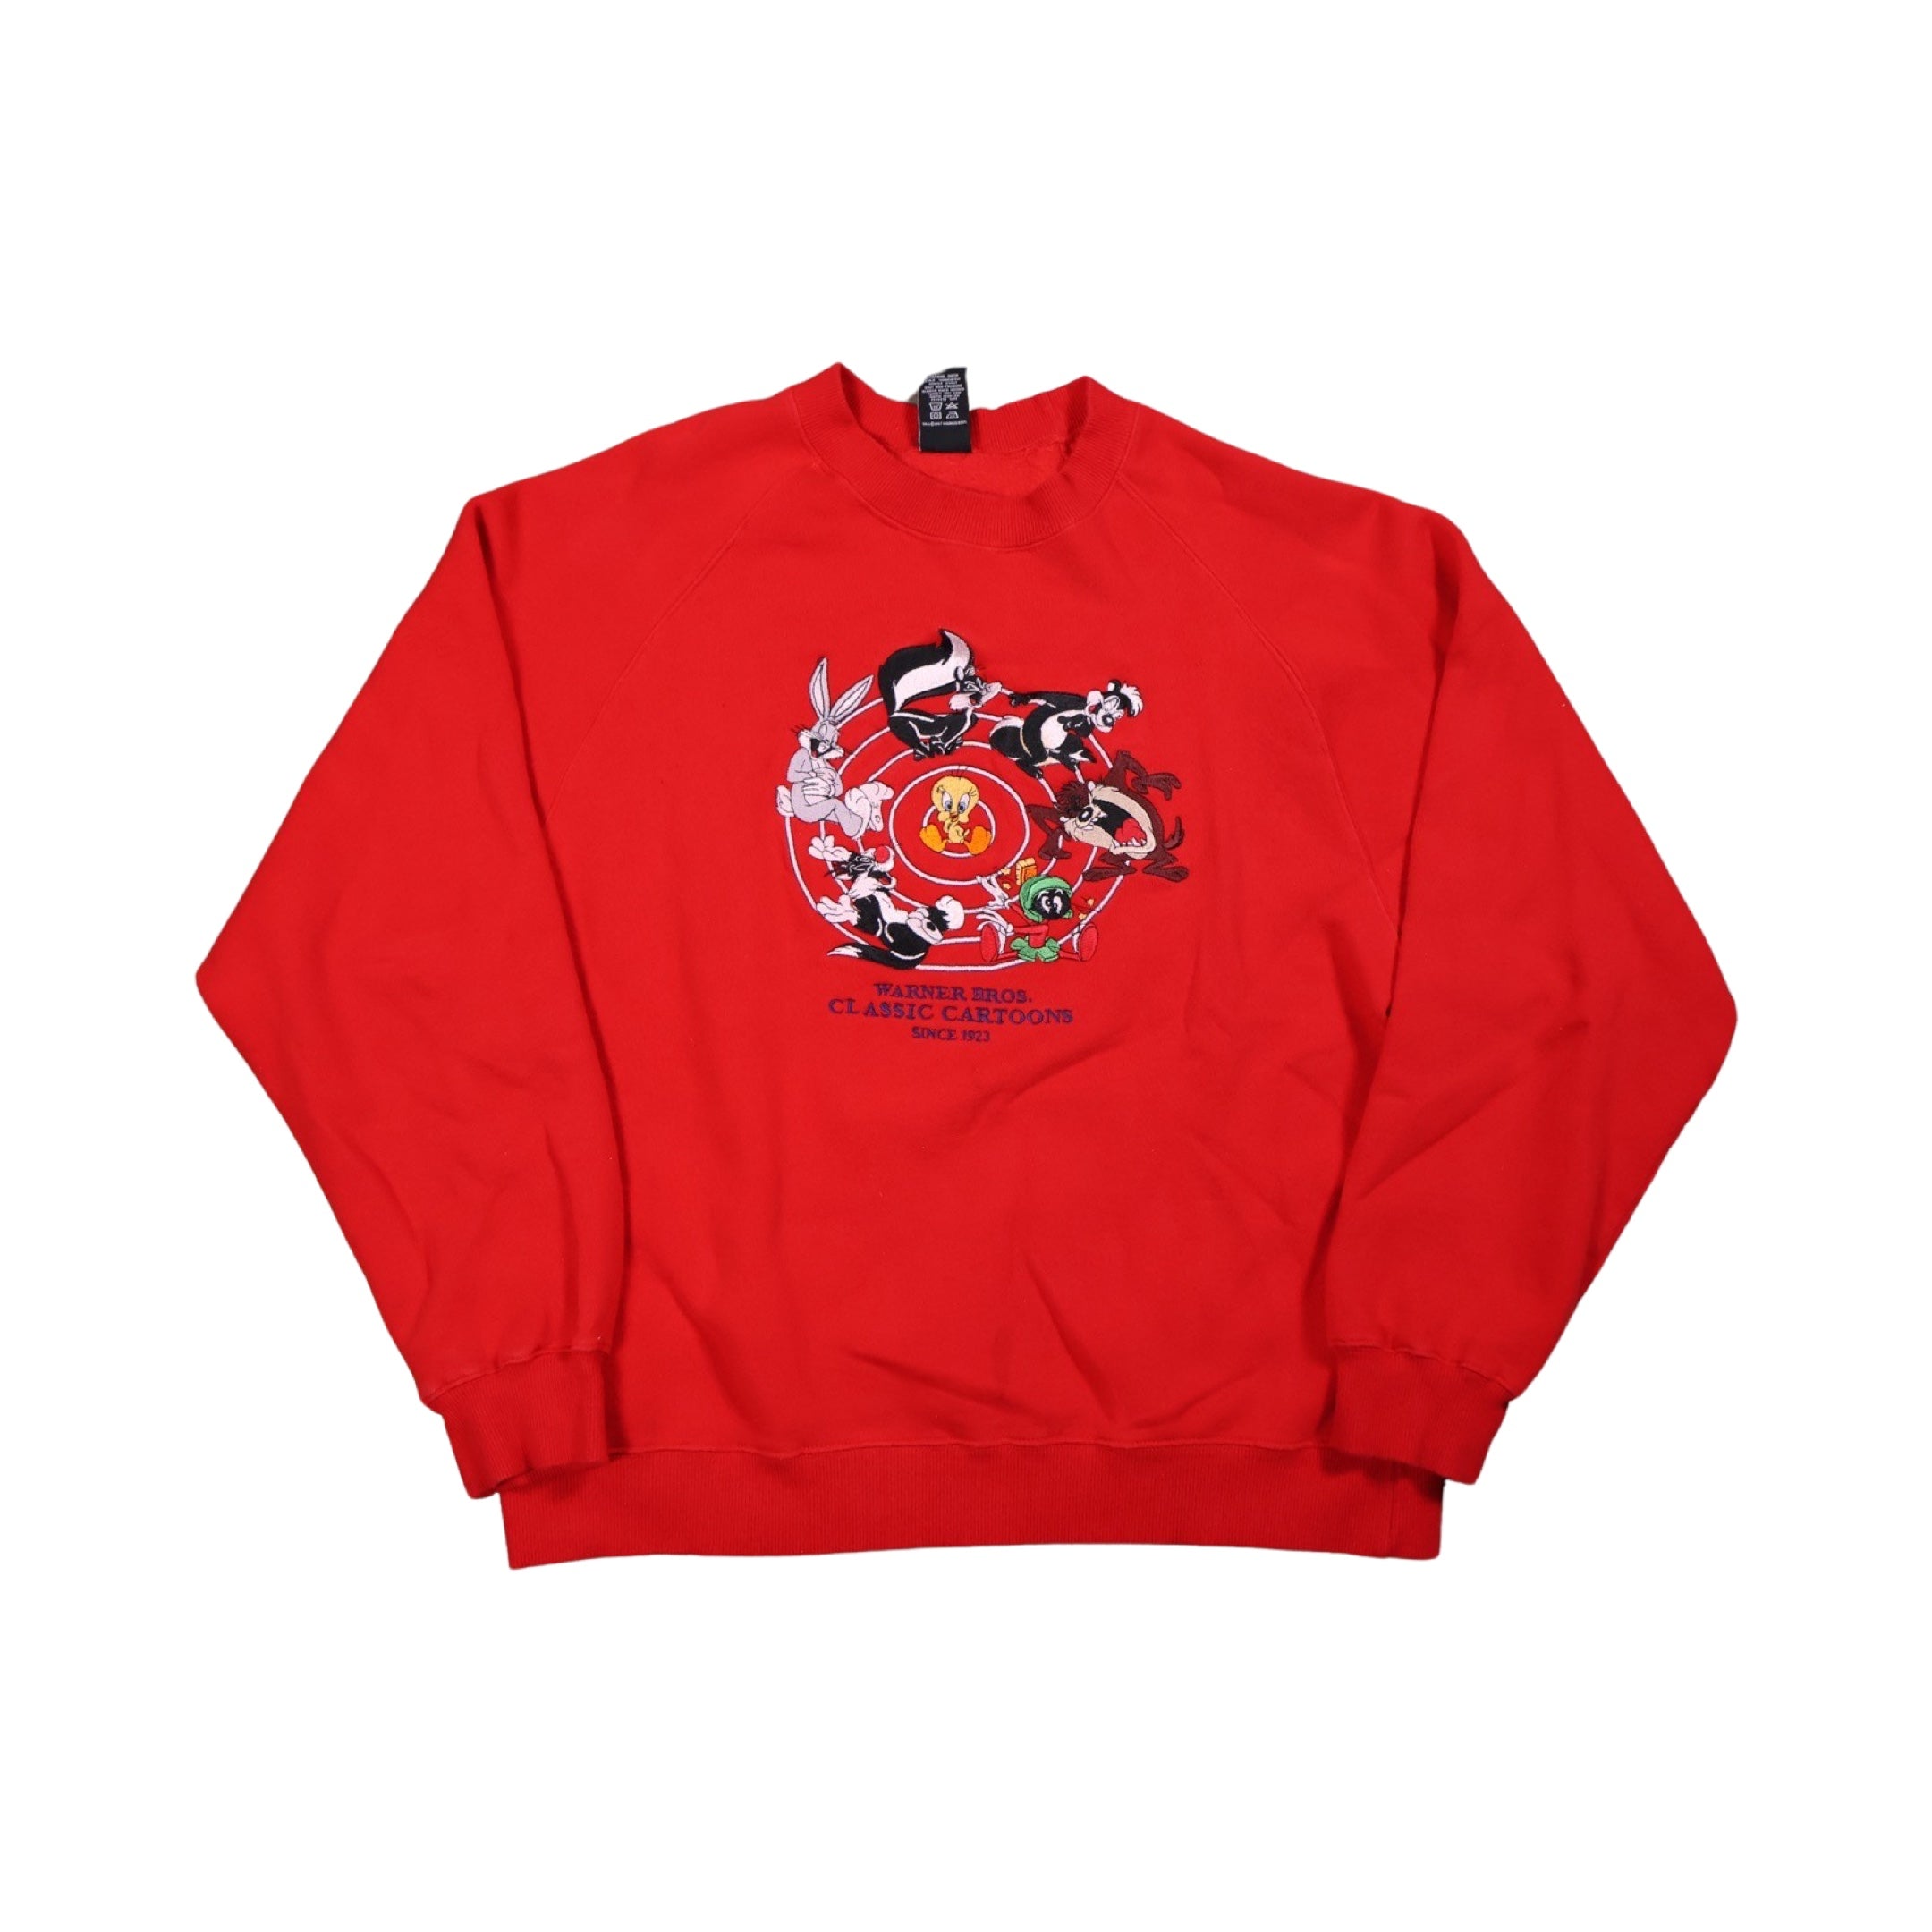 Looney Tunes 1997 Sweater (Medium)